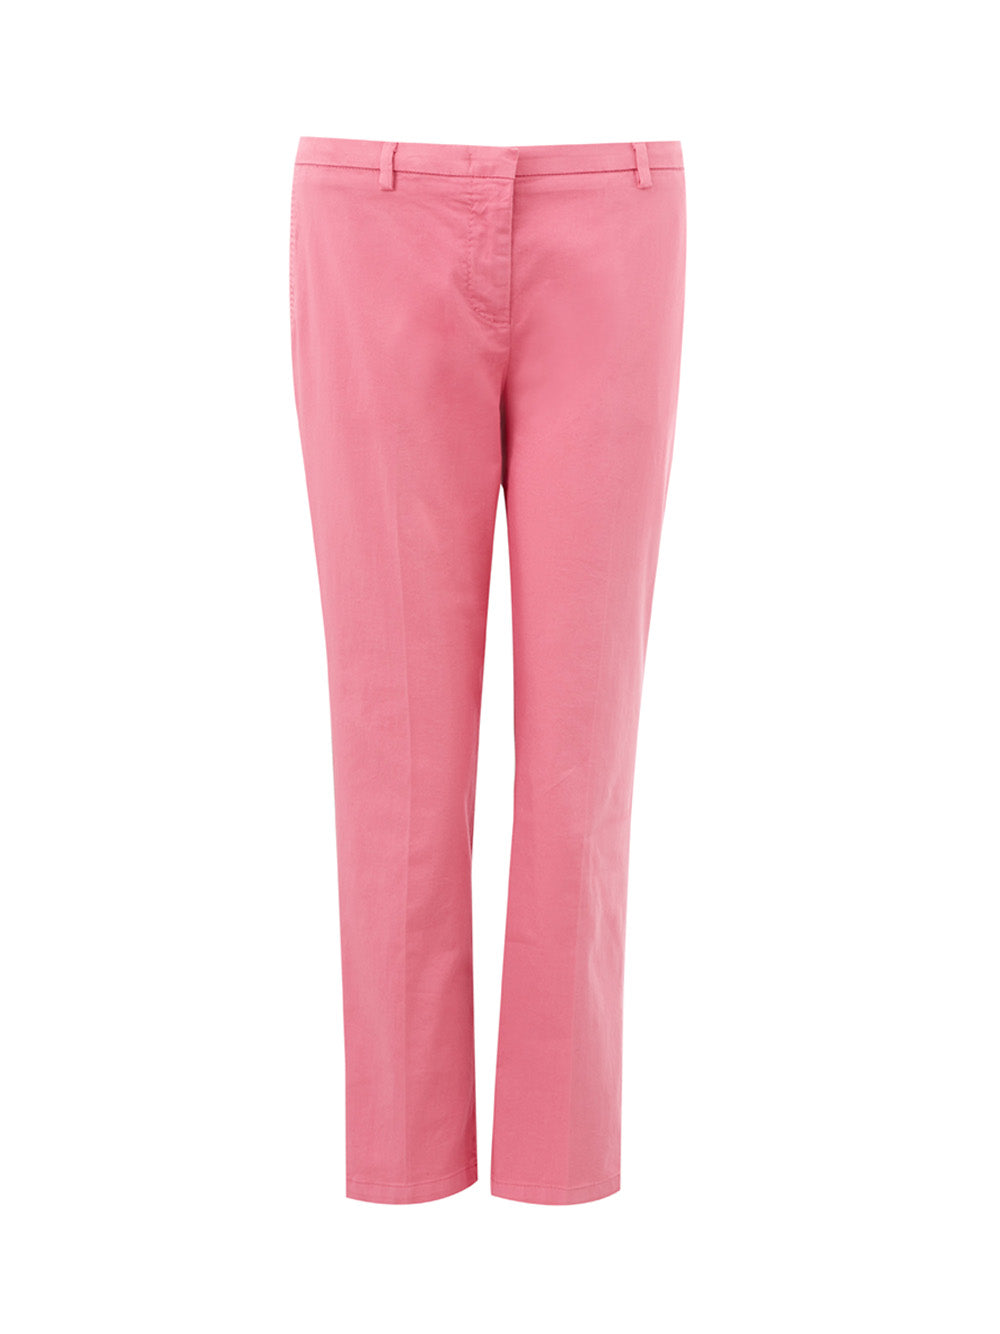 Pantalone Rosa in Cotone